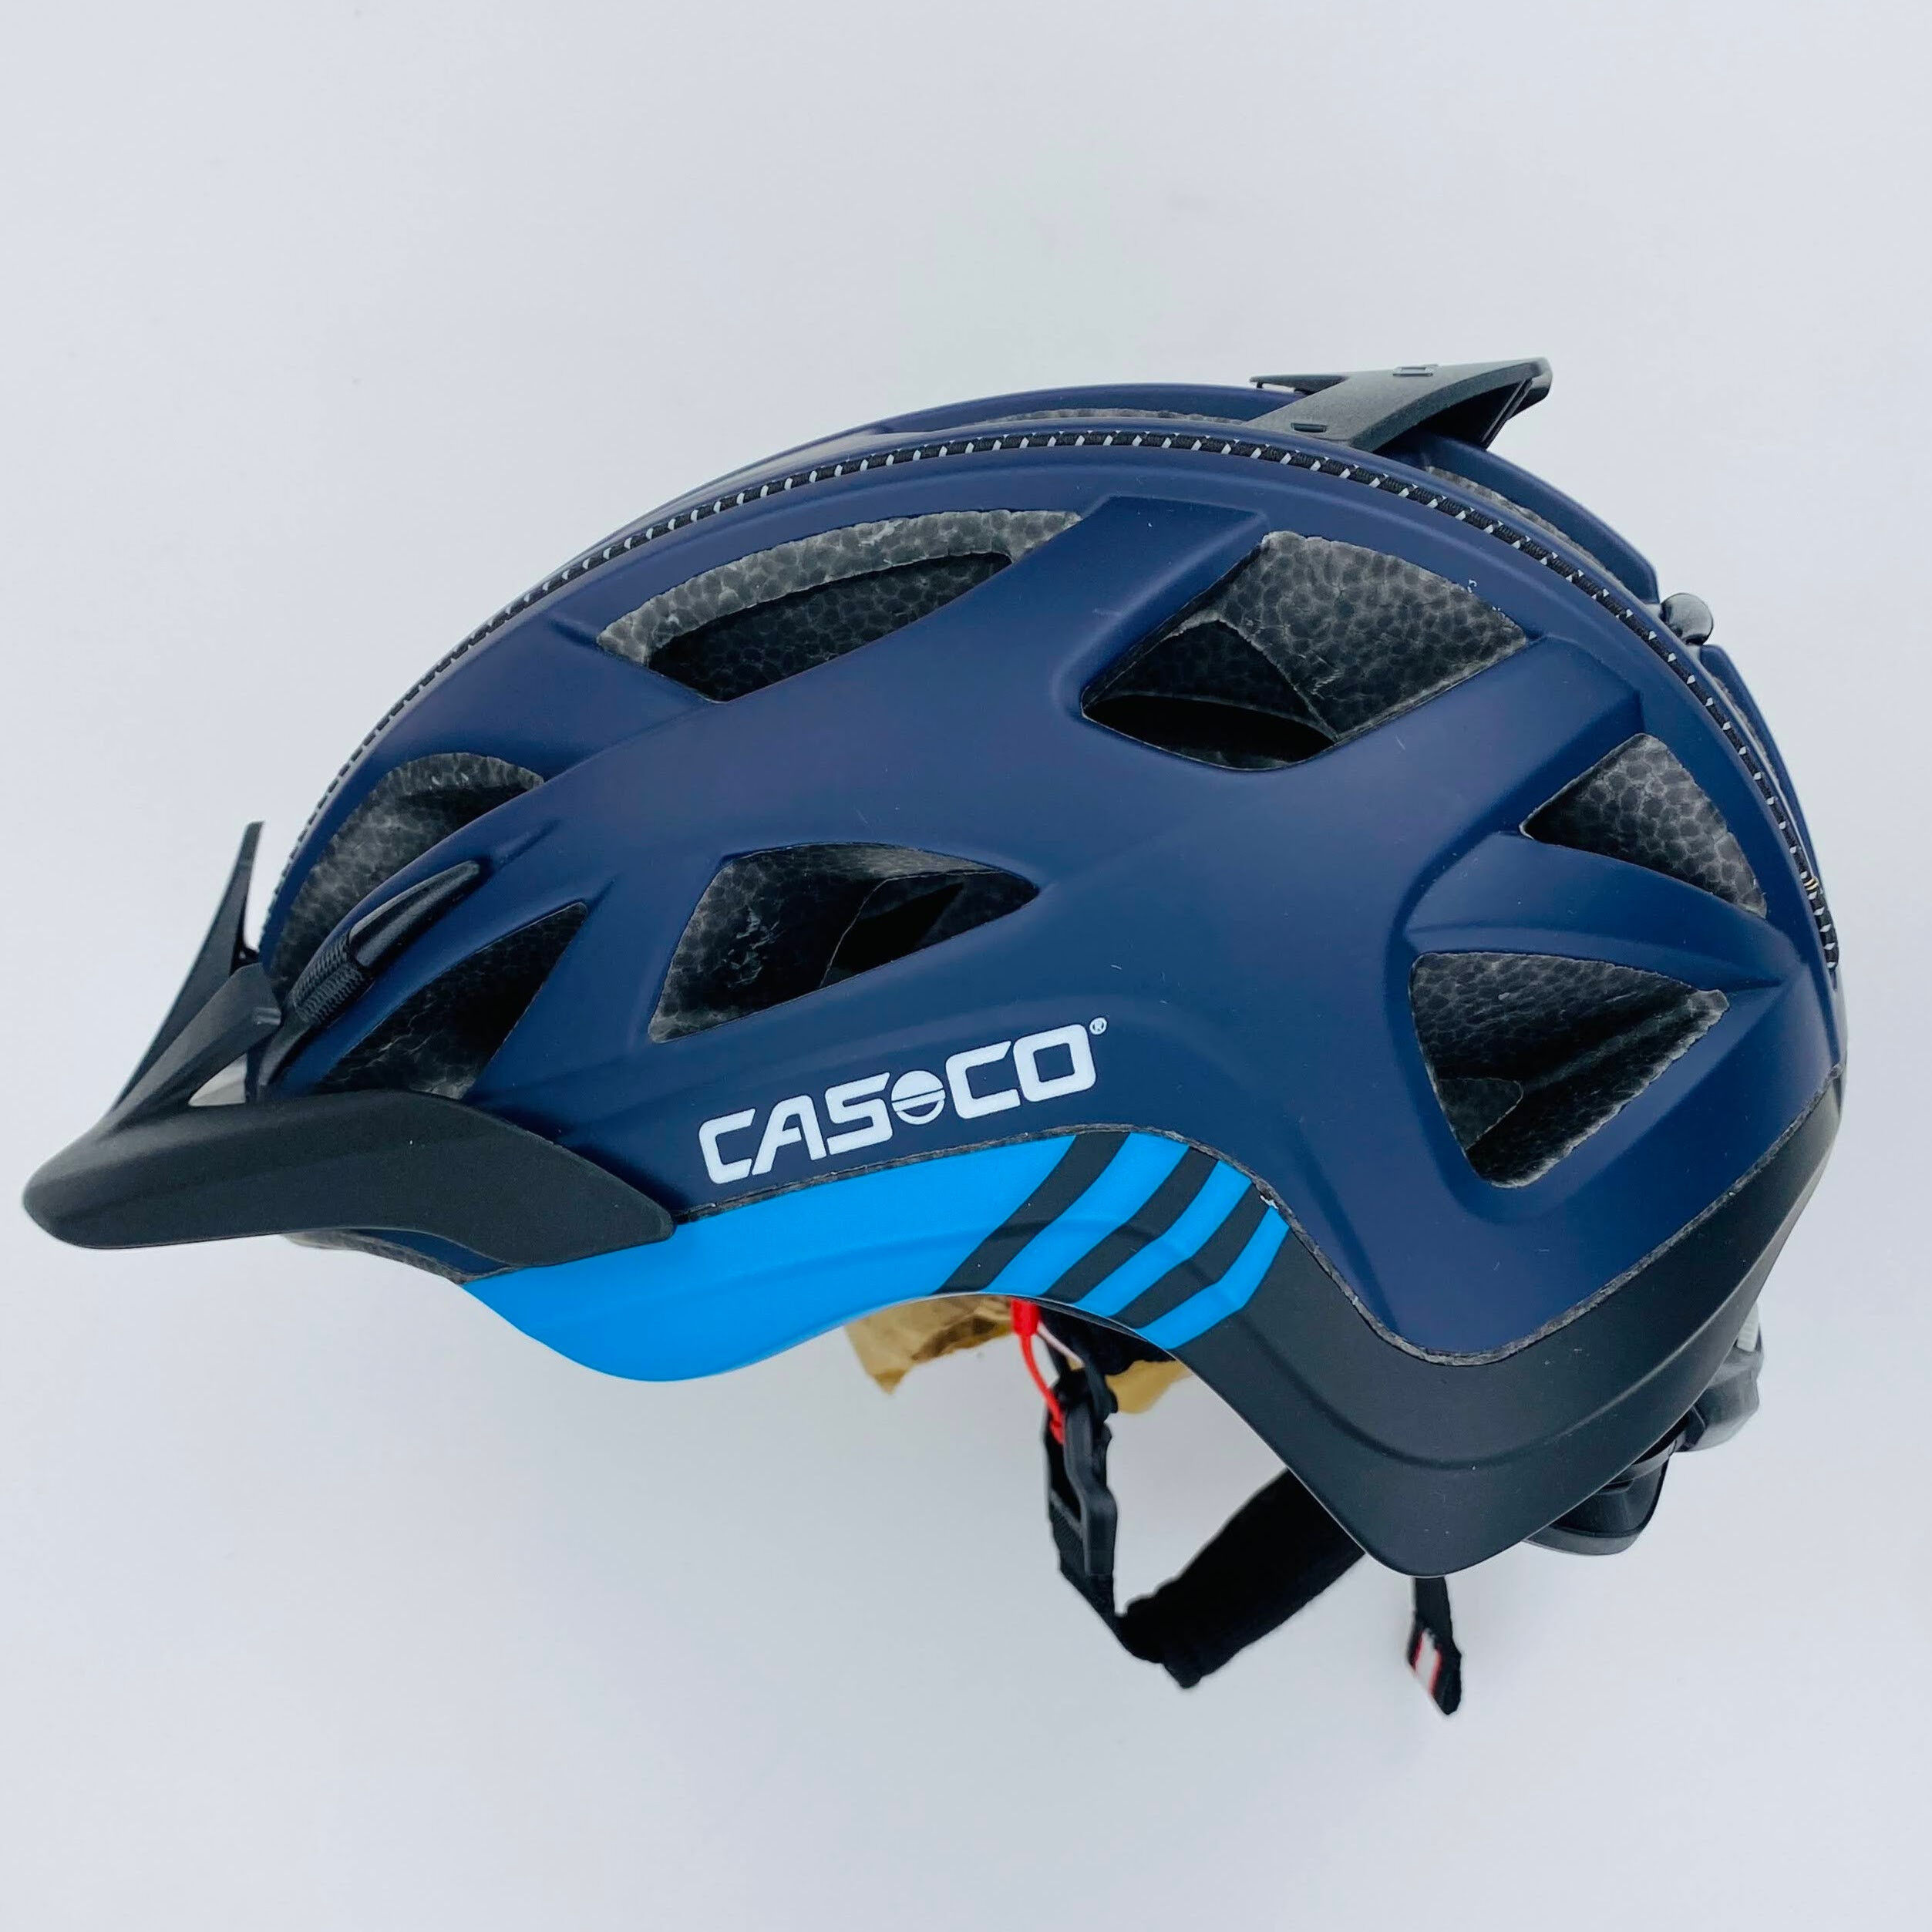 Casco Activ 2 - Casco per bici di seconda mano - Olio blu - 52-56 cm | Hardloop